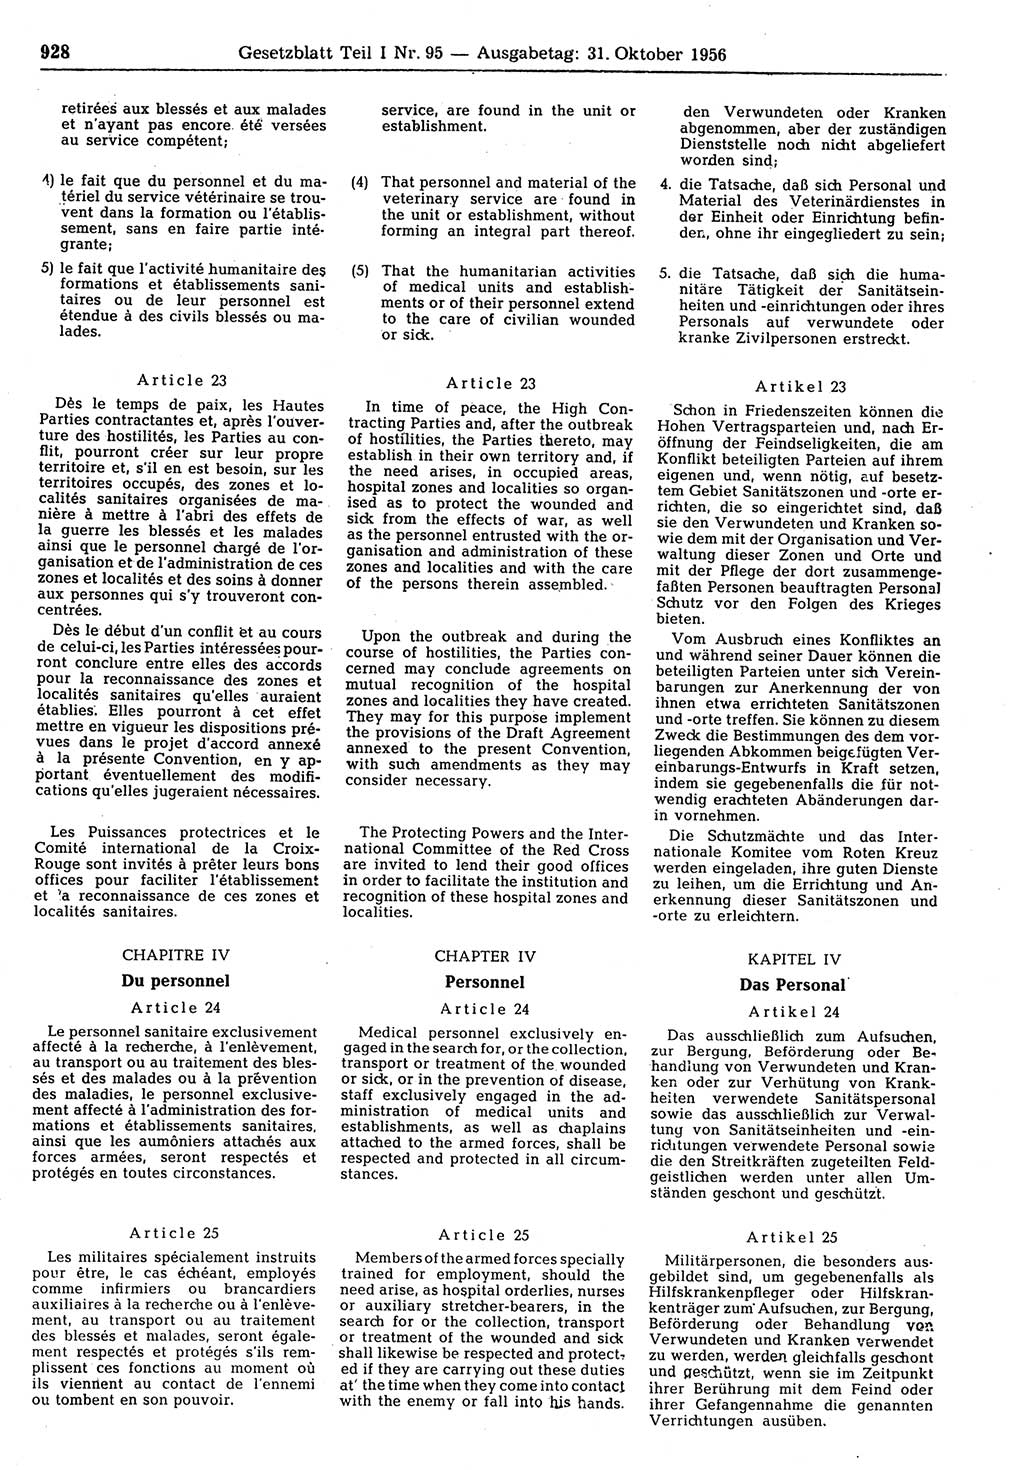 Gesetzblatt (GBl.) der Deutschen Demokratischen Republik (DDR) Teil Ⅰ 1956, Seite 928 (GBl. DDR Ⅰ 1956, S. 928)